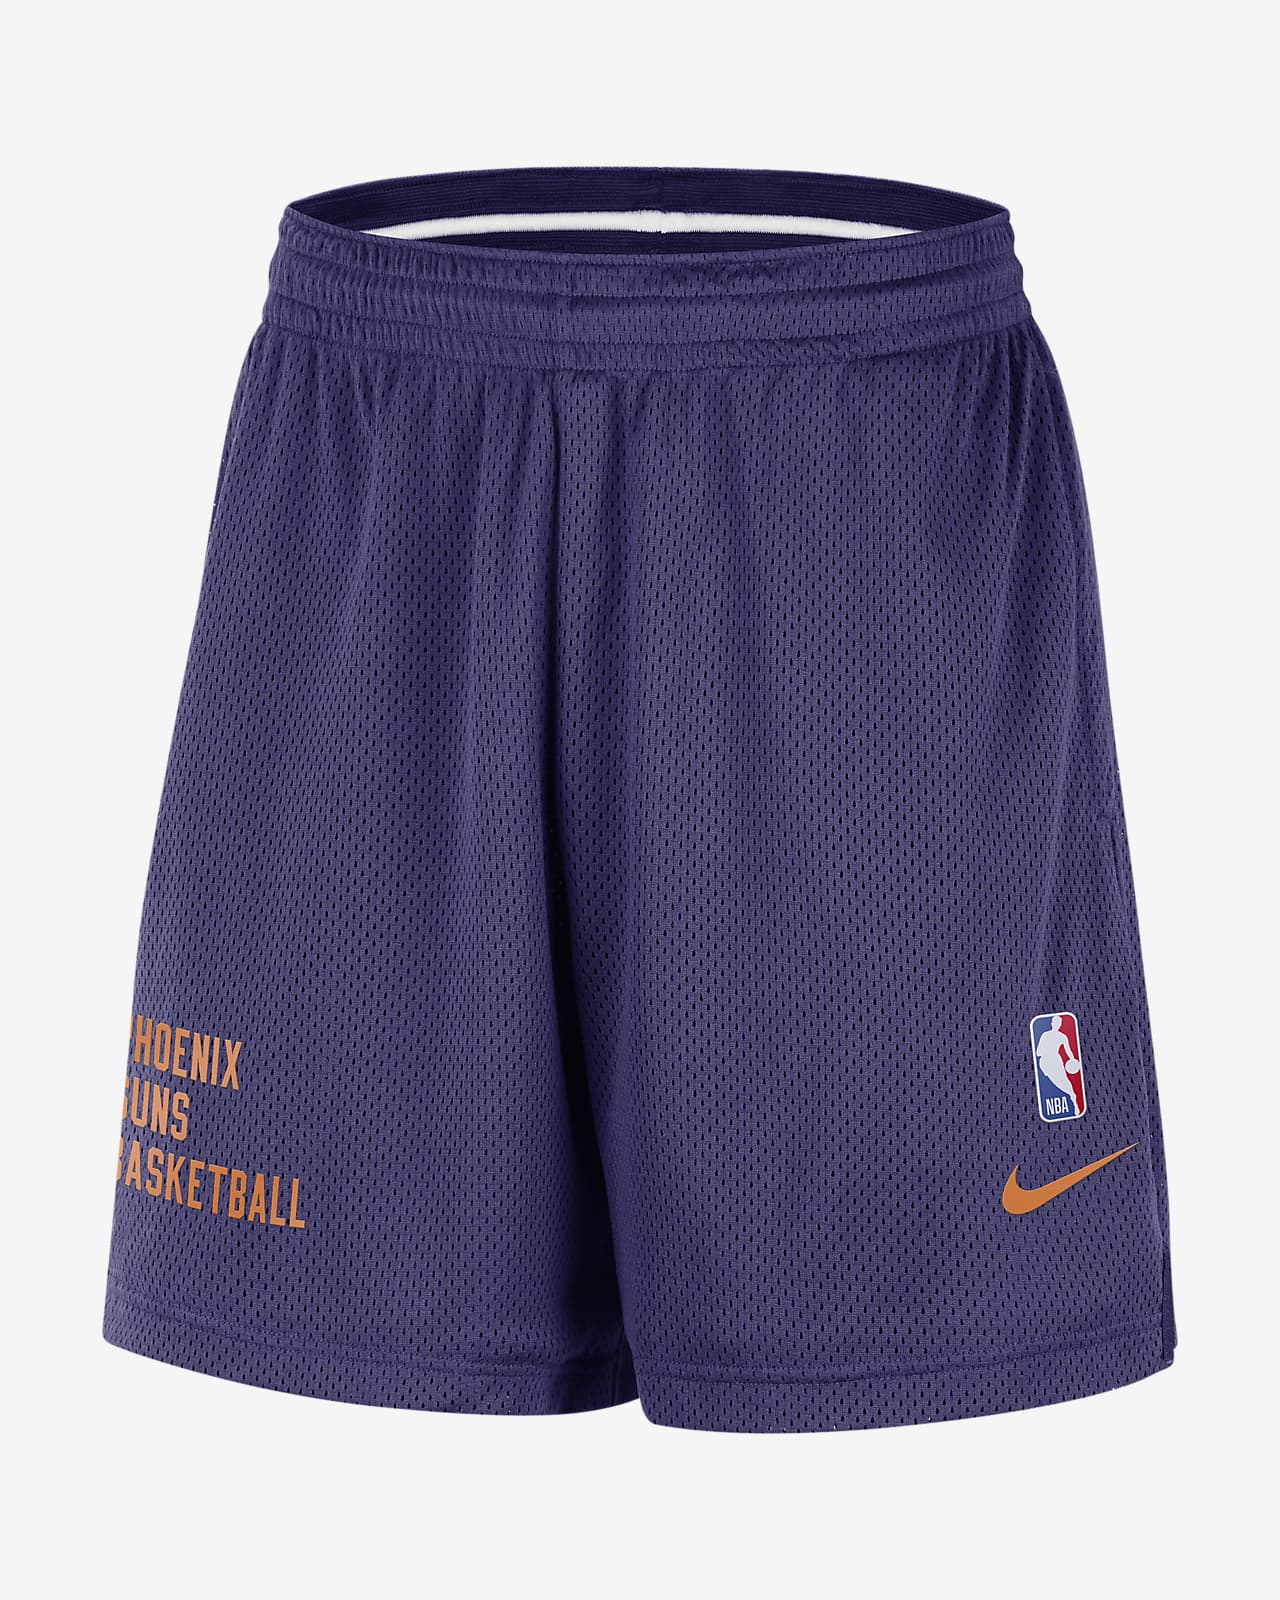 菲尼克斯太阳队 Nike NBA 男子网眼布短裤